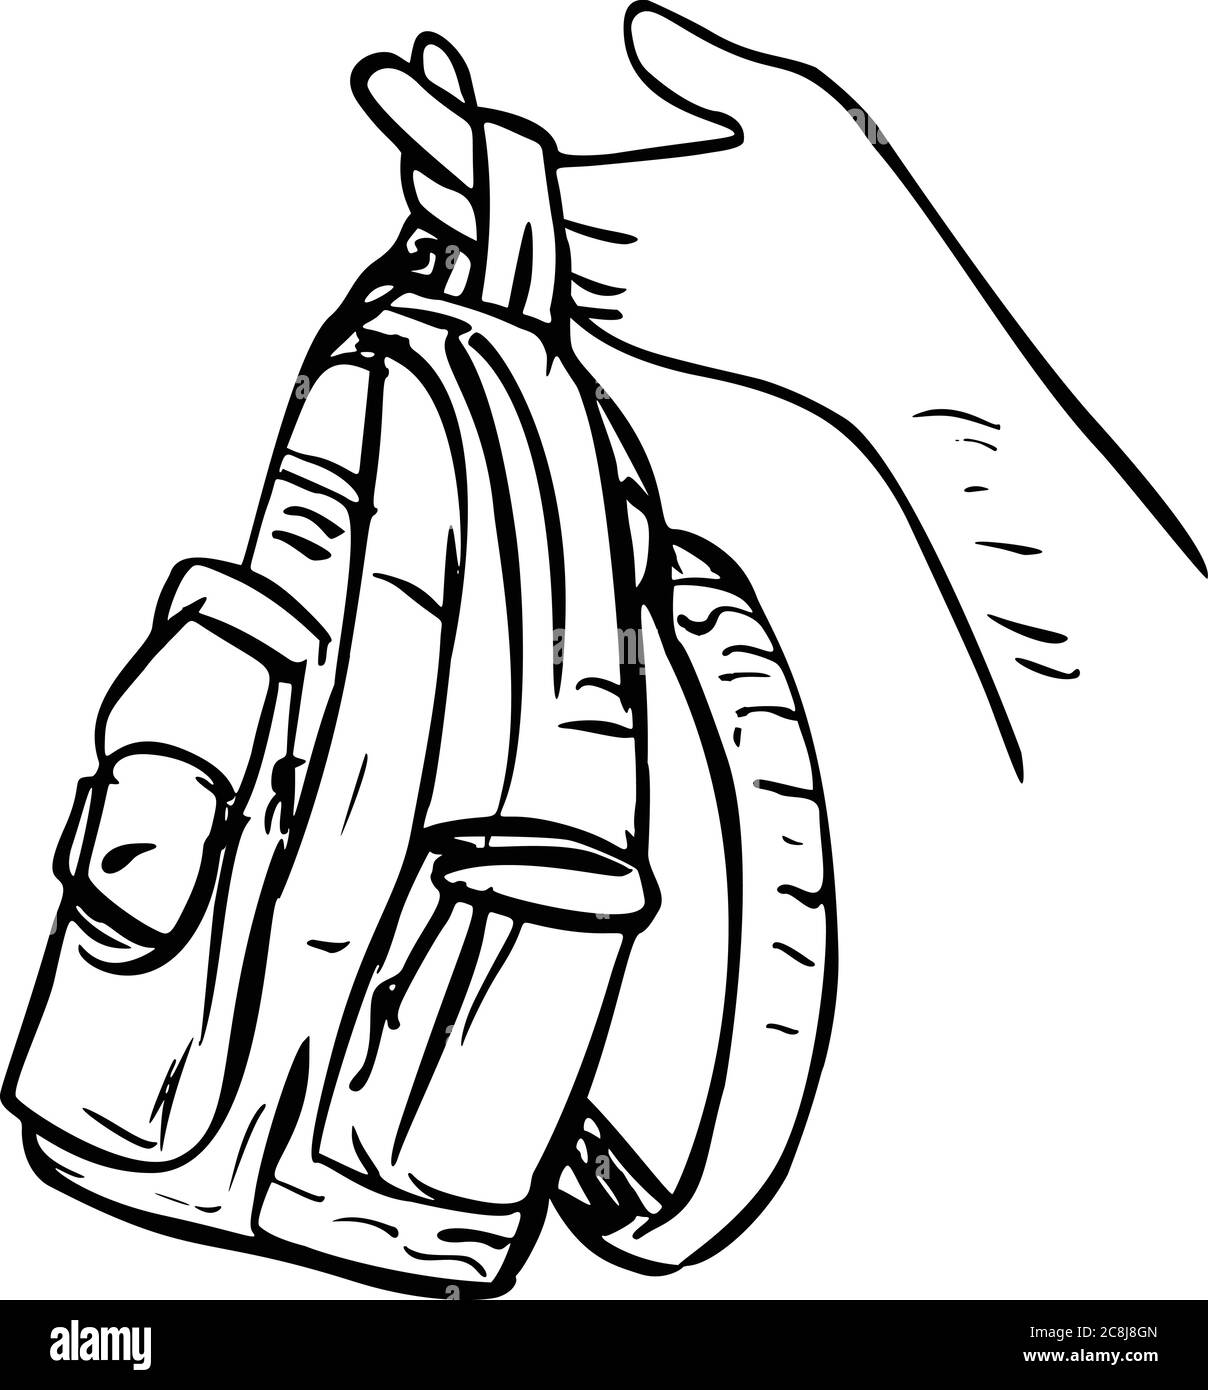 Scratchboard Stil Illustration einer Hand halten verschenken einen Rucksack, Rucksack, Tragetasche oder Tasche auf isolierten Hintergrund in Scrapboard schwarz getan Stock Vektor